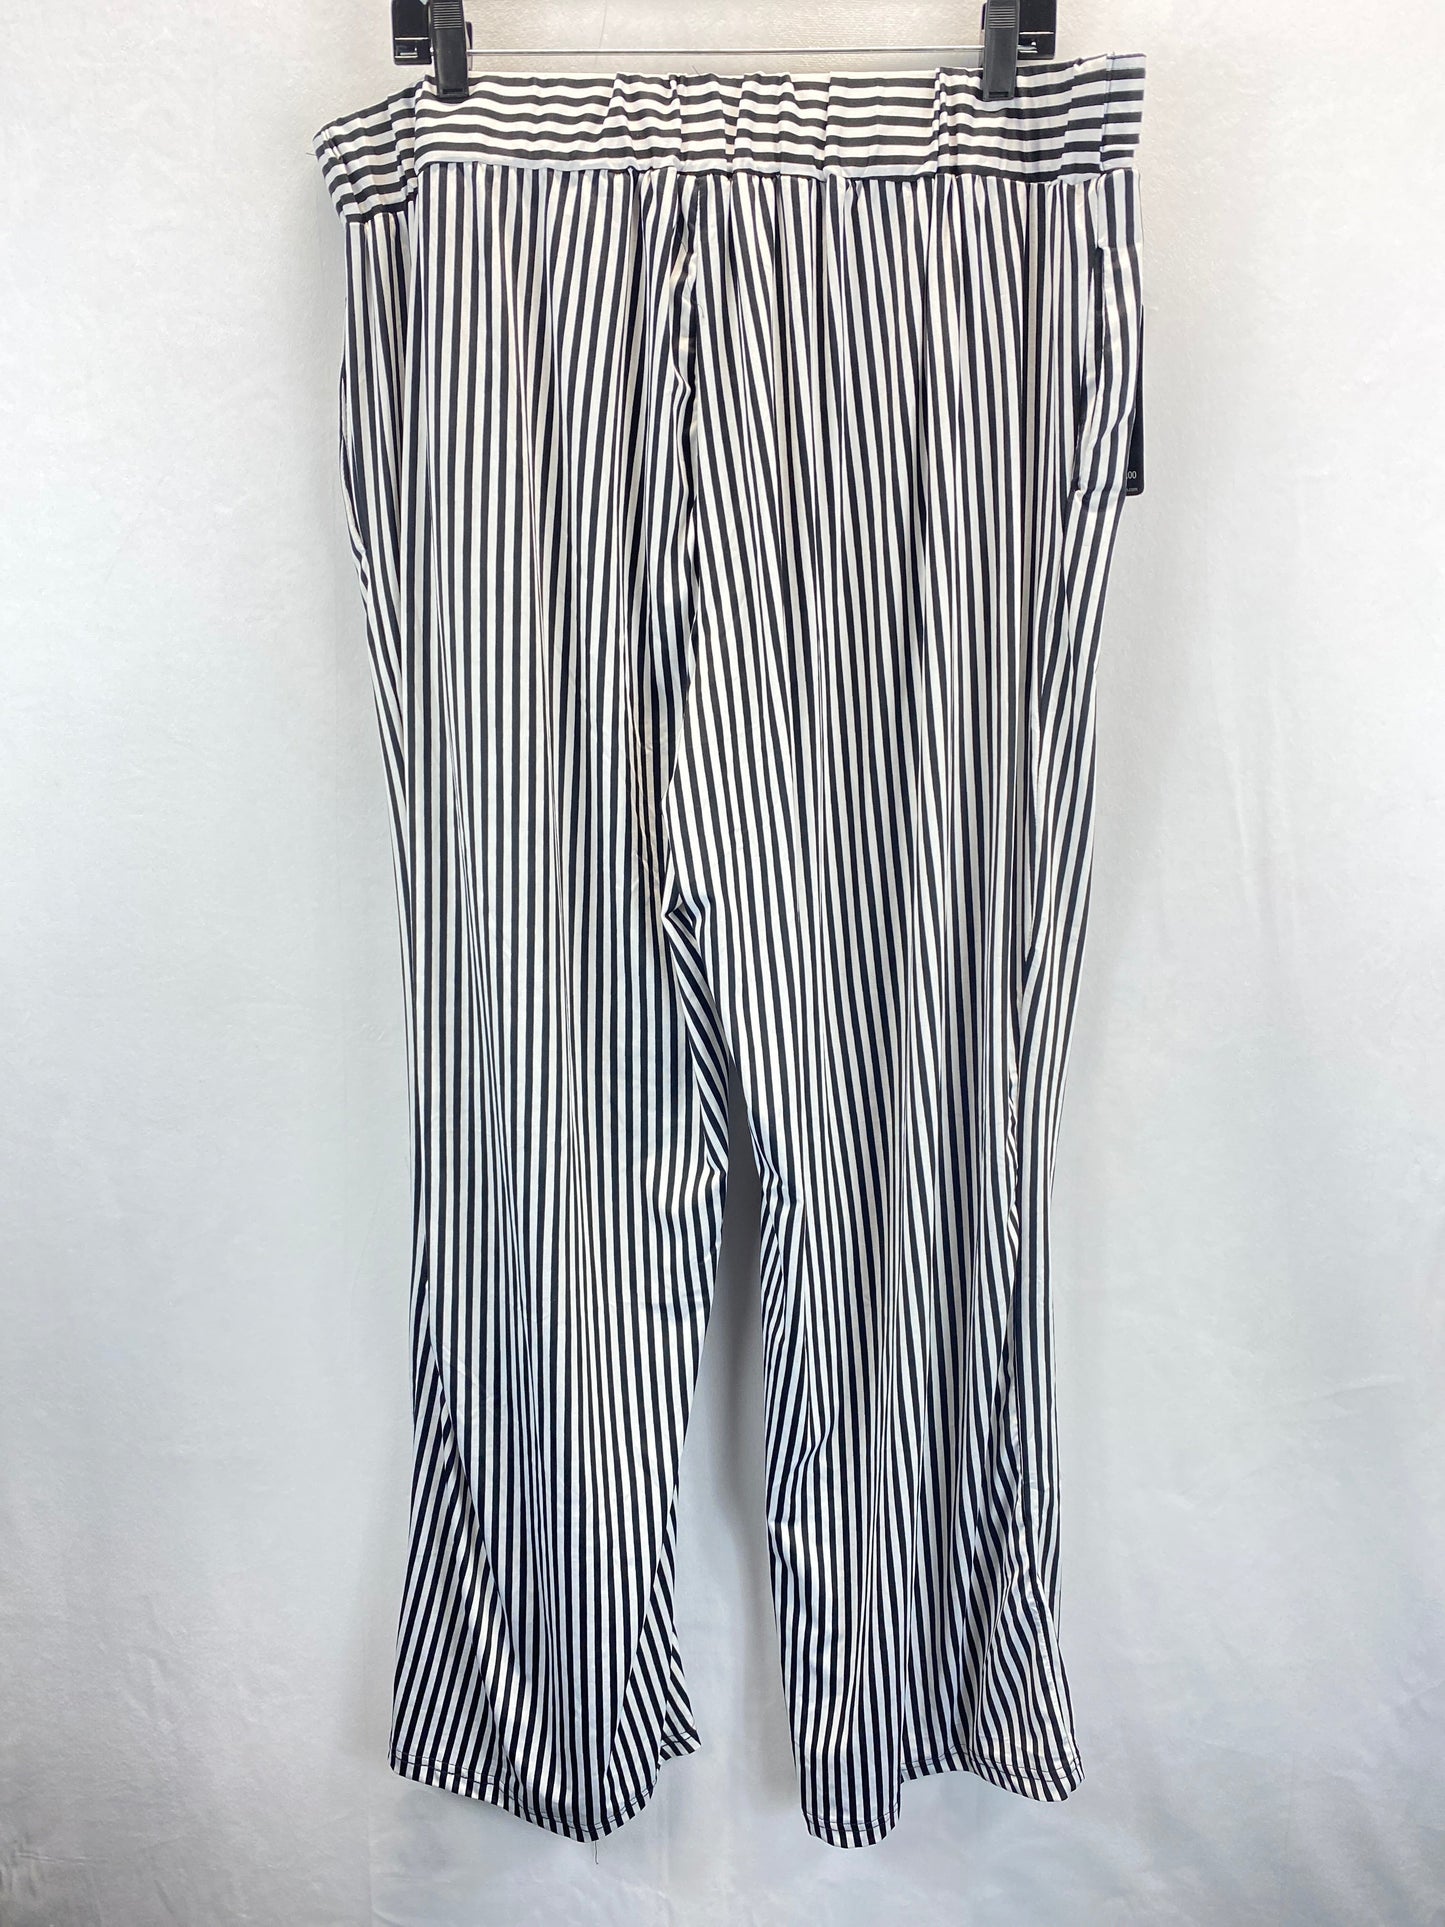 Striped Pattern Pants Other Robert Louis, Size 3x